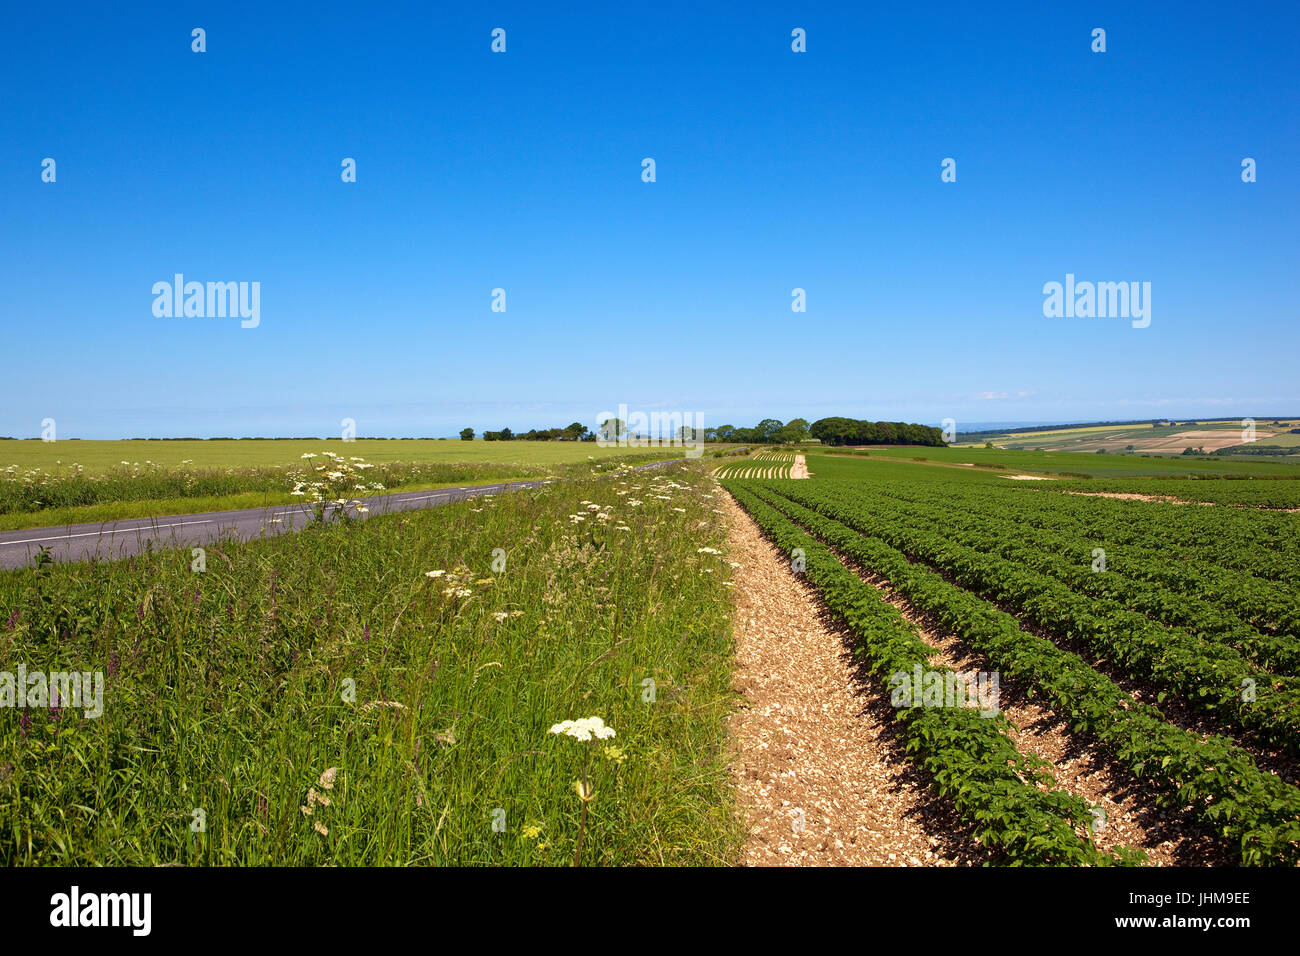 Un verano cultivo de papa en el Yorkshire Wolds con flores y suelo calcáreo por una carretera rural bajo un cielo azul claro Foto de stock